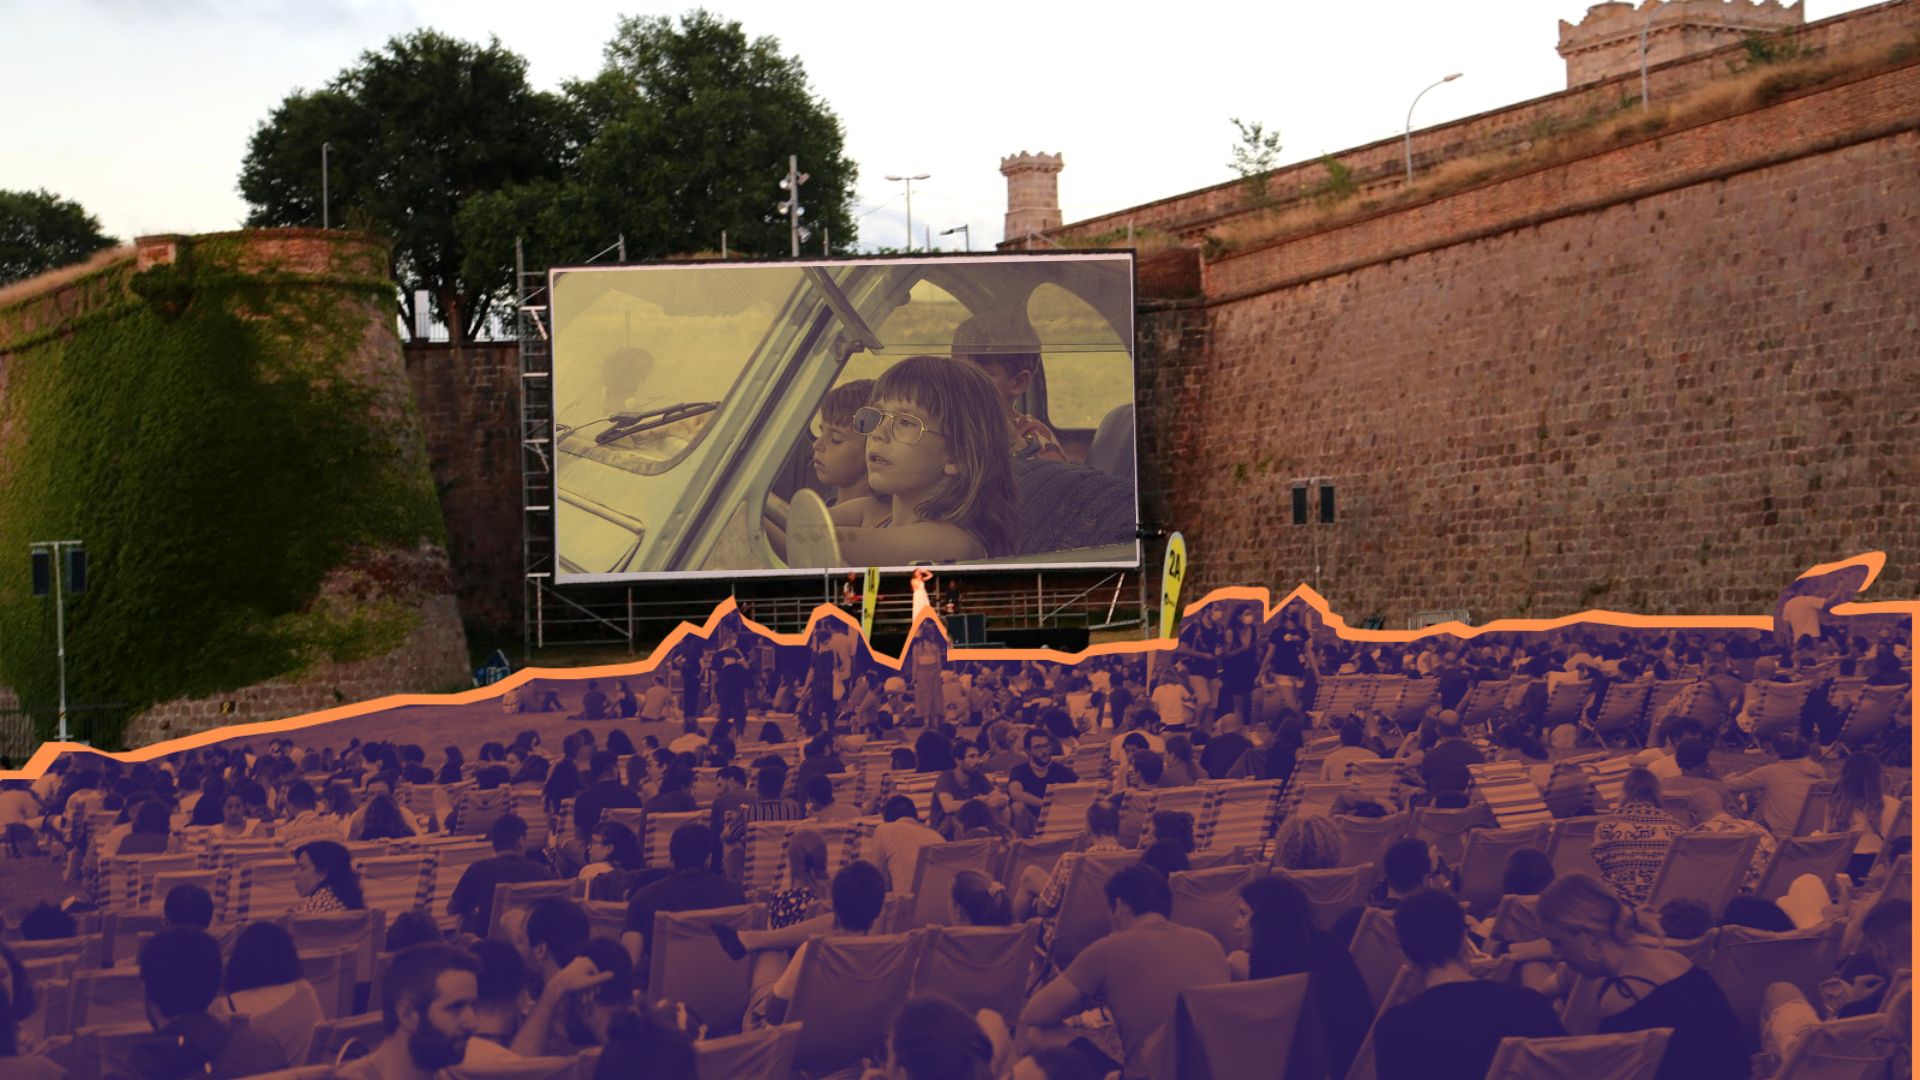 Cine a la fresca en Montjuïc 2022: Entradas y programación de películas al aire libre en Barcelona